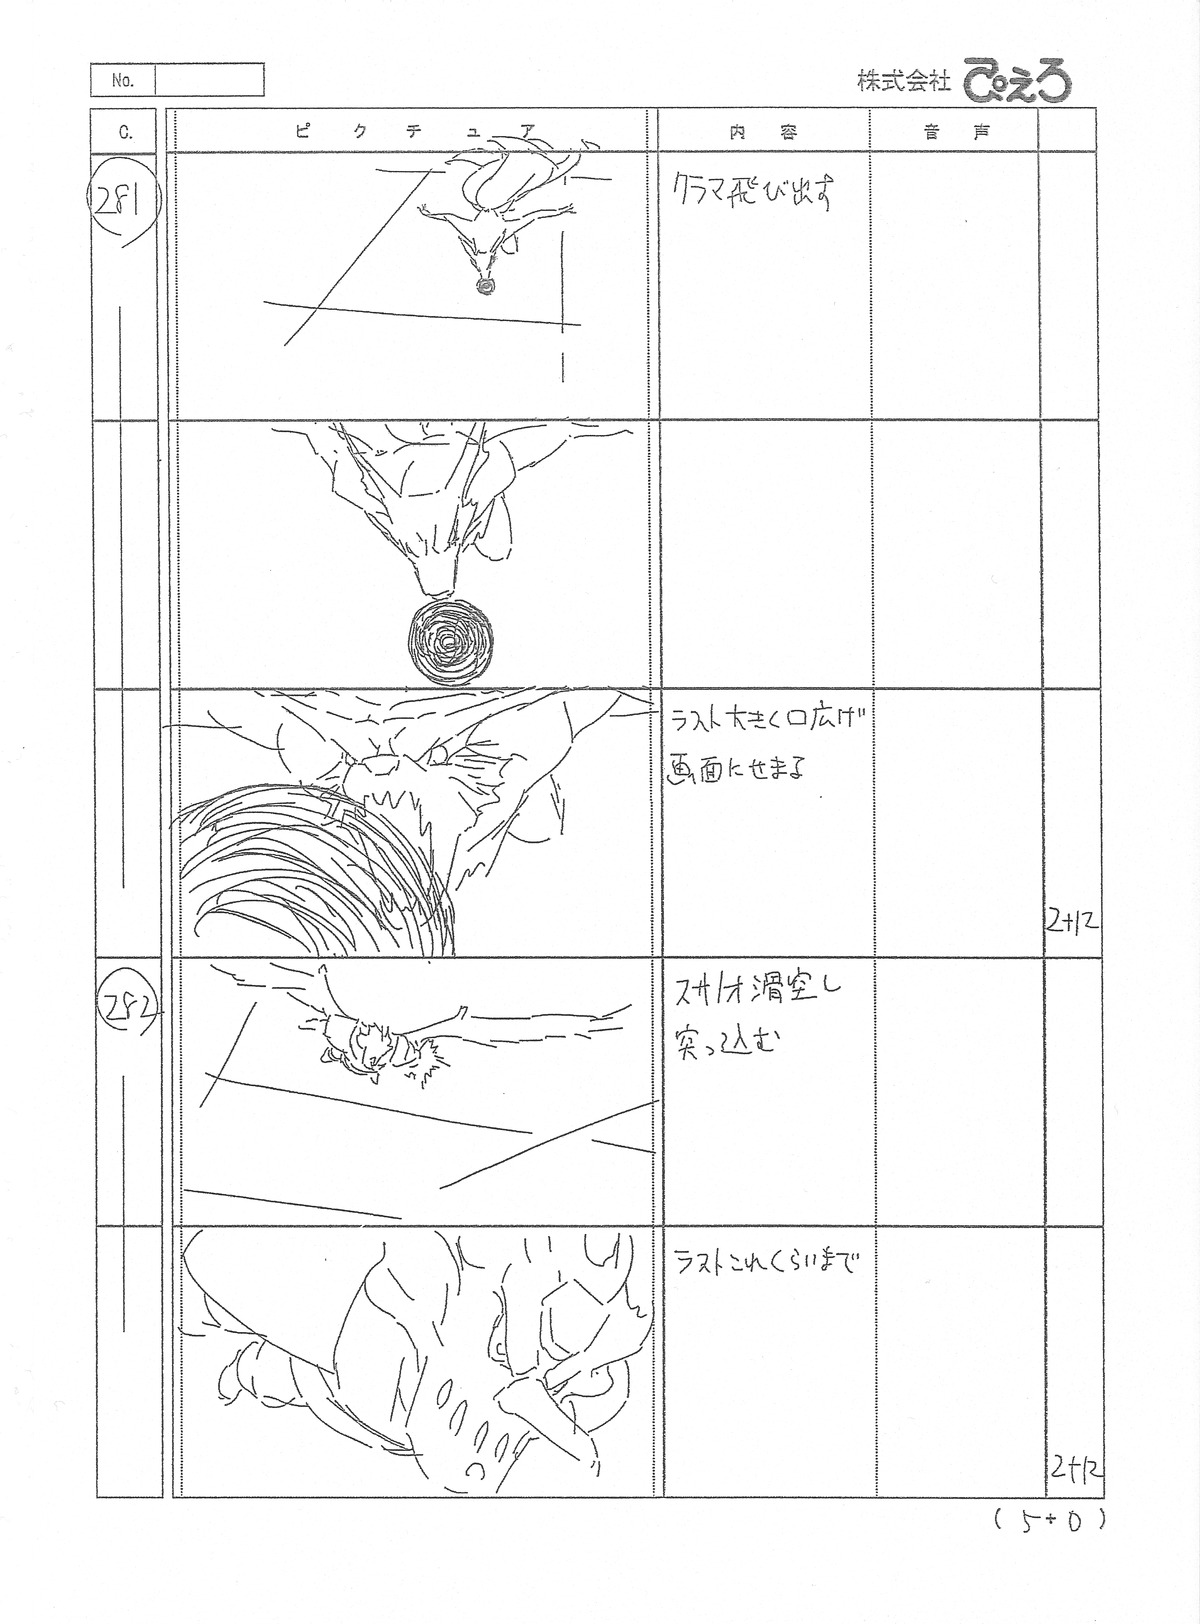 hiroyuki_yamashita naruto naruto_shippuuden production_materials storyboard